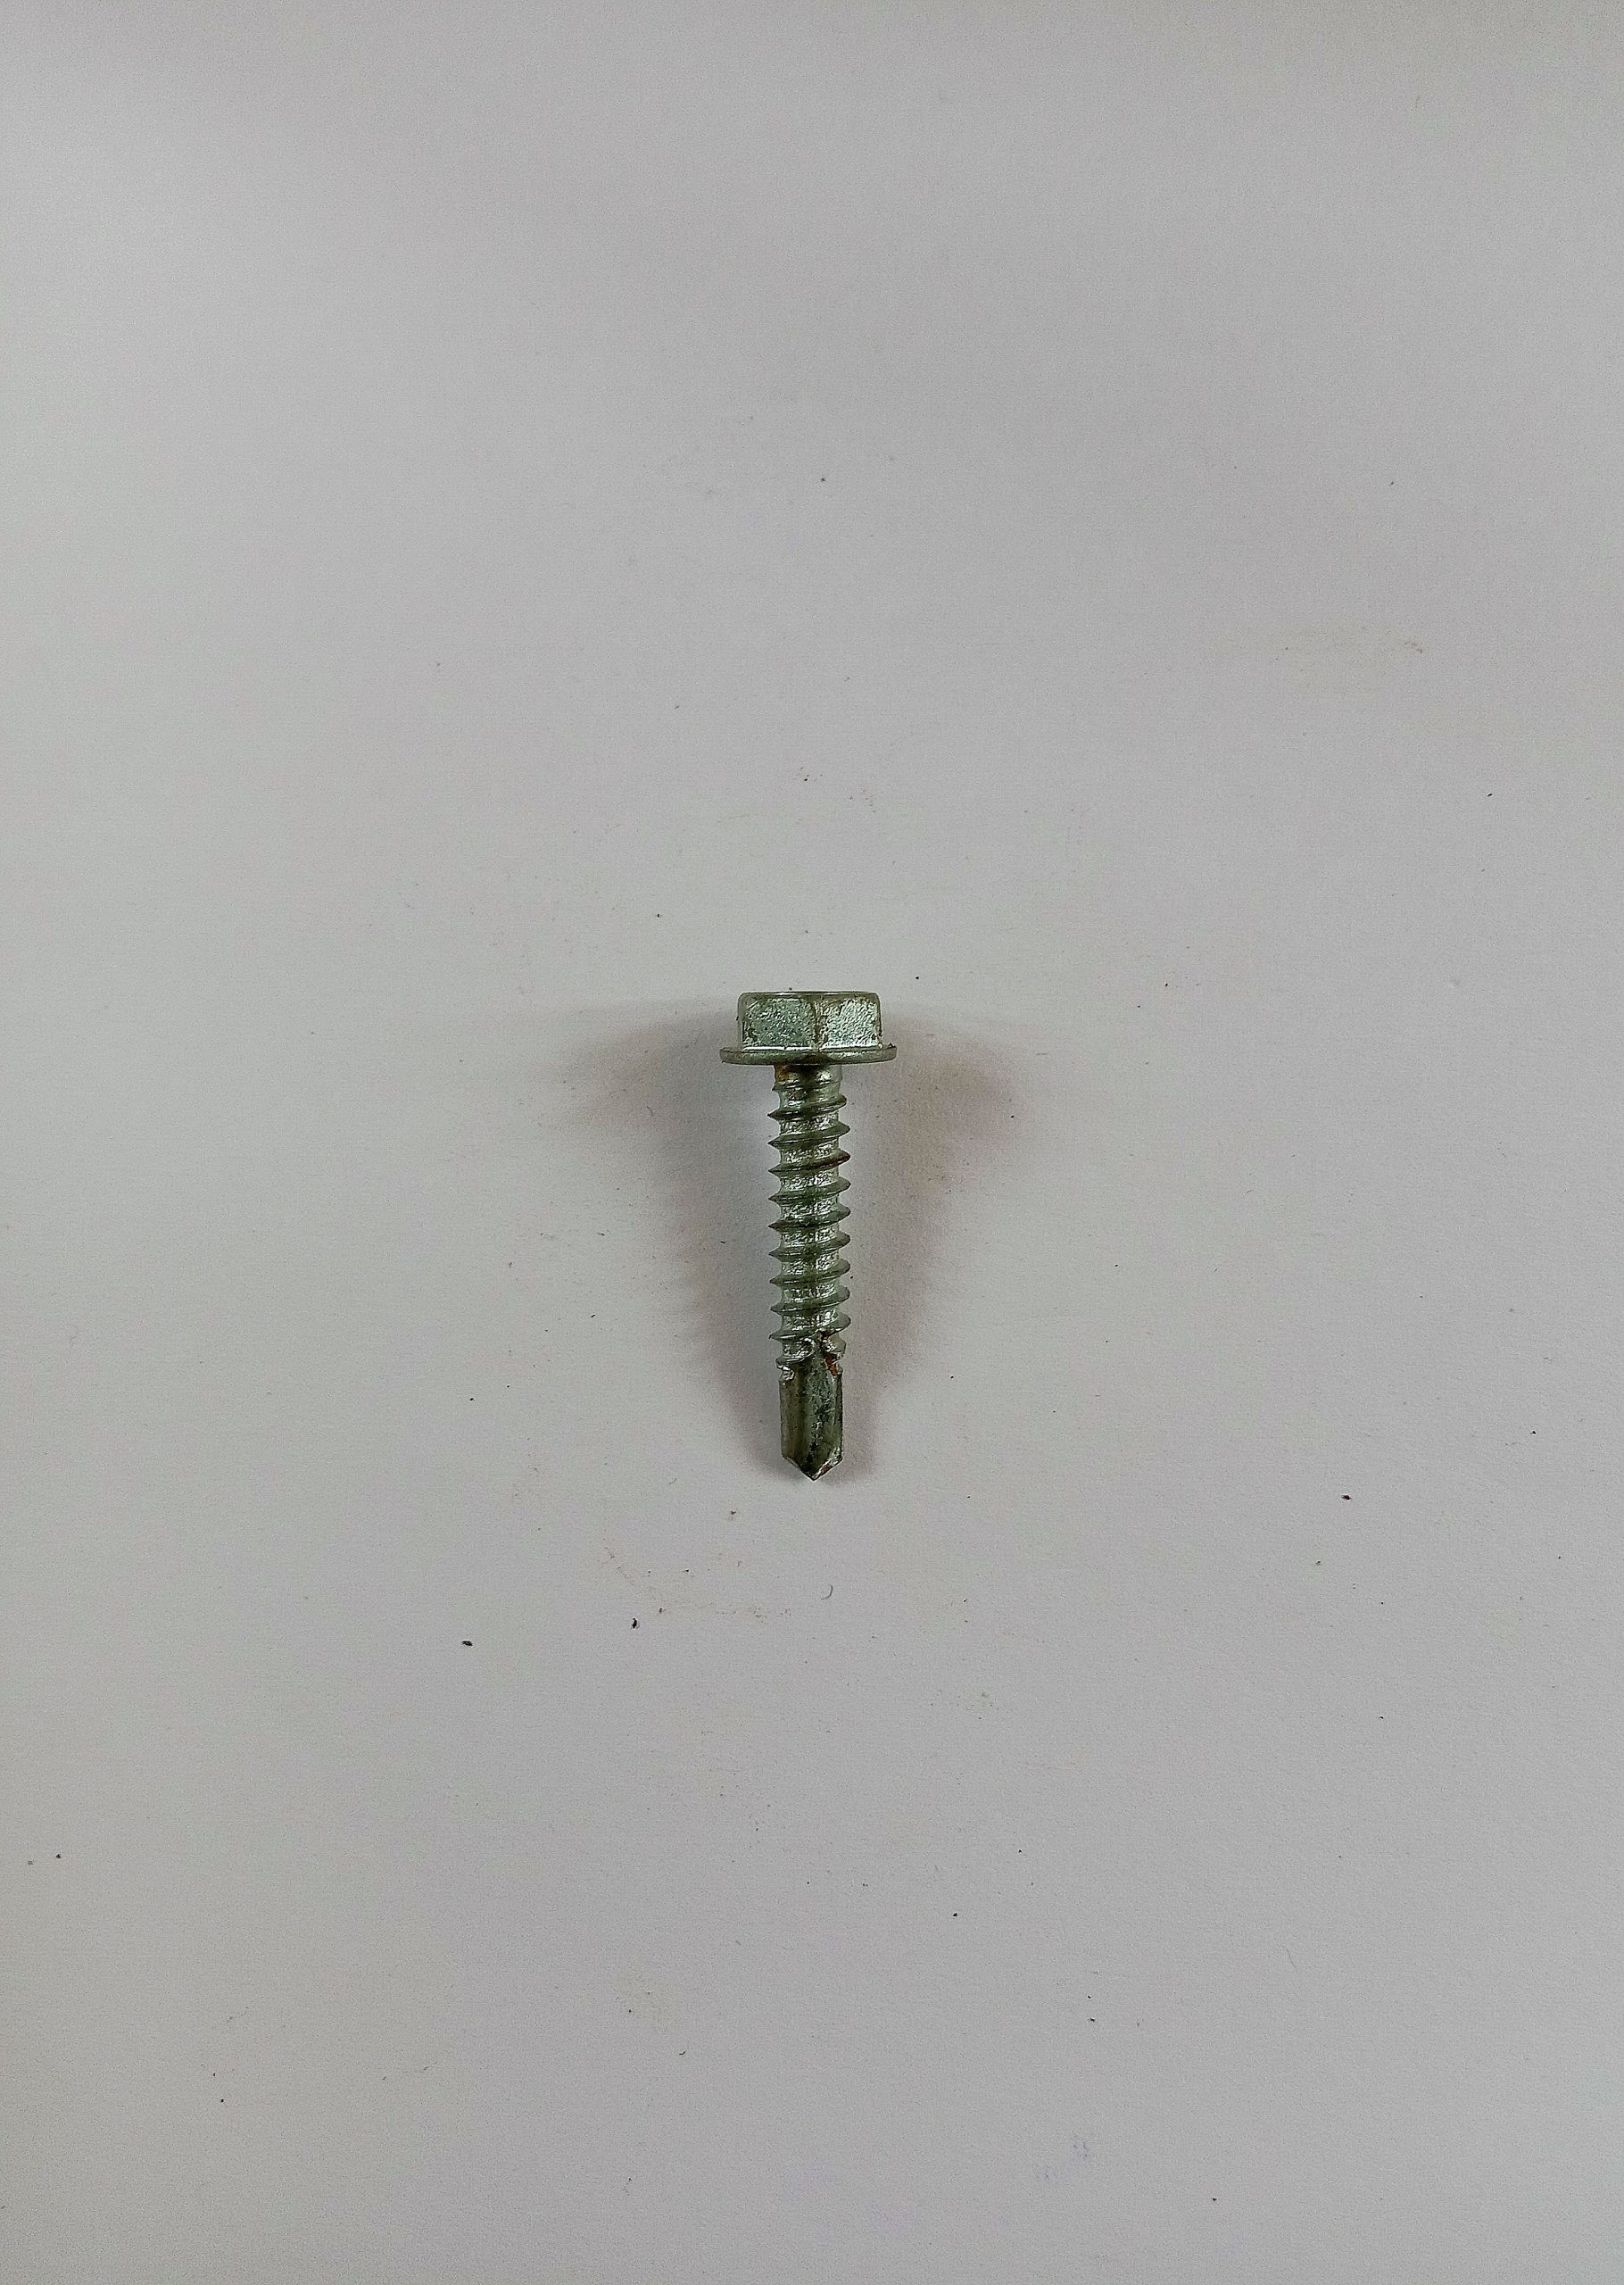 A screw